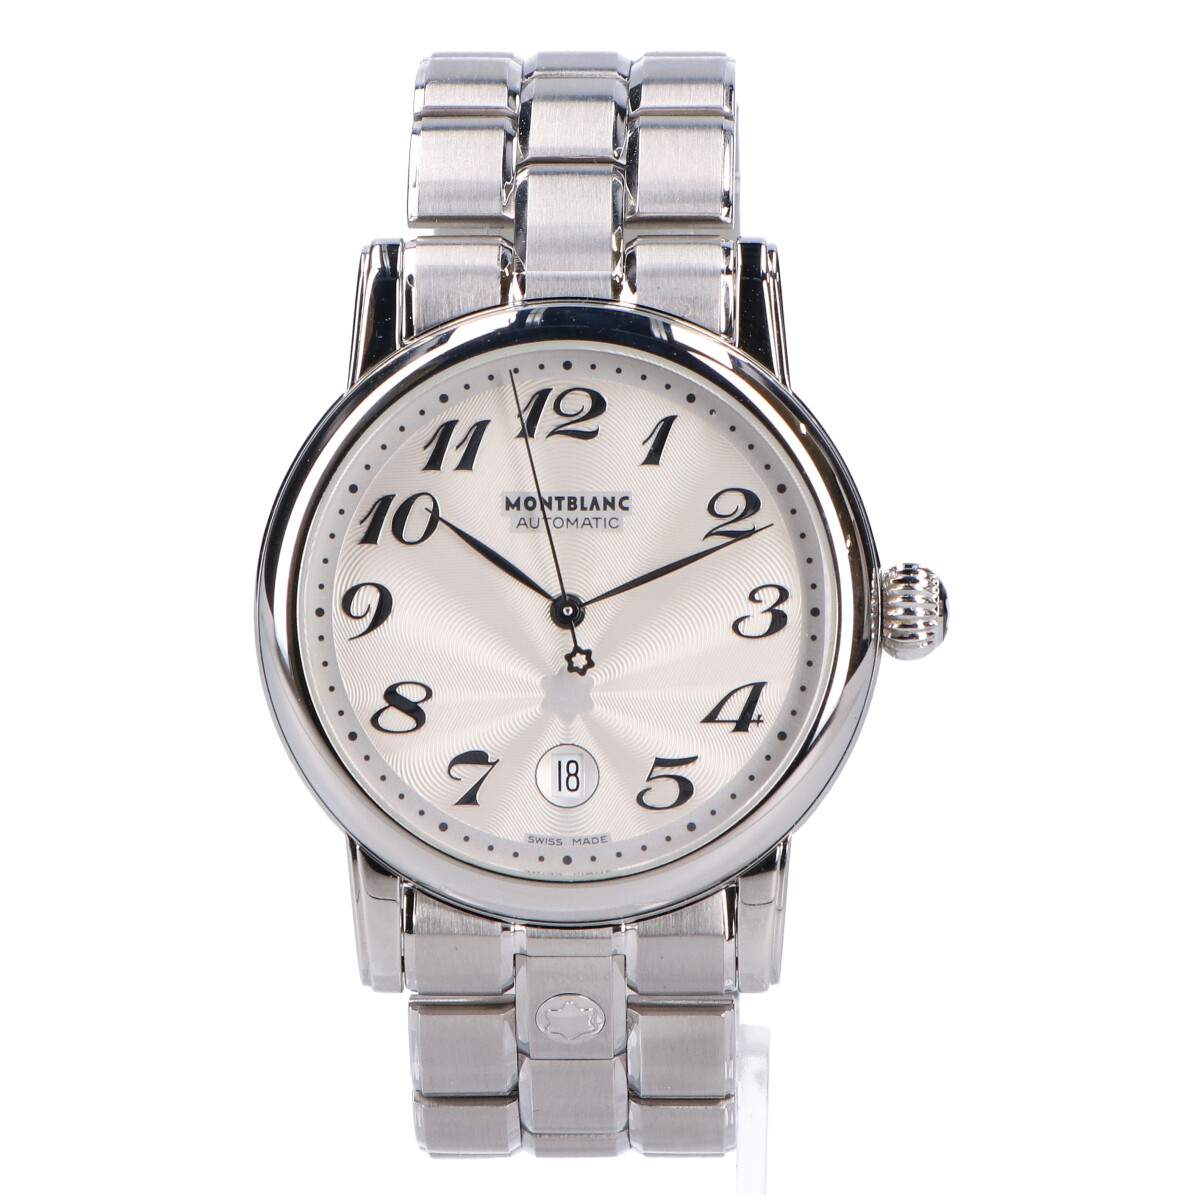 モンブランの7068 マイスターシュテュック 自動巻き 腕時計の買取実績です。